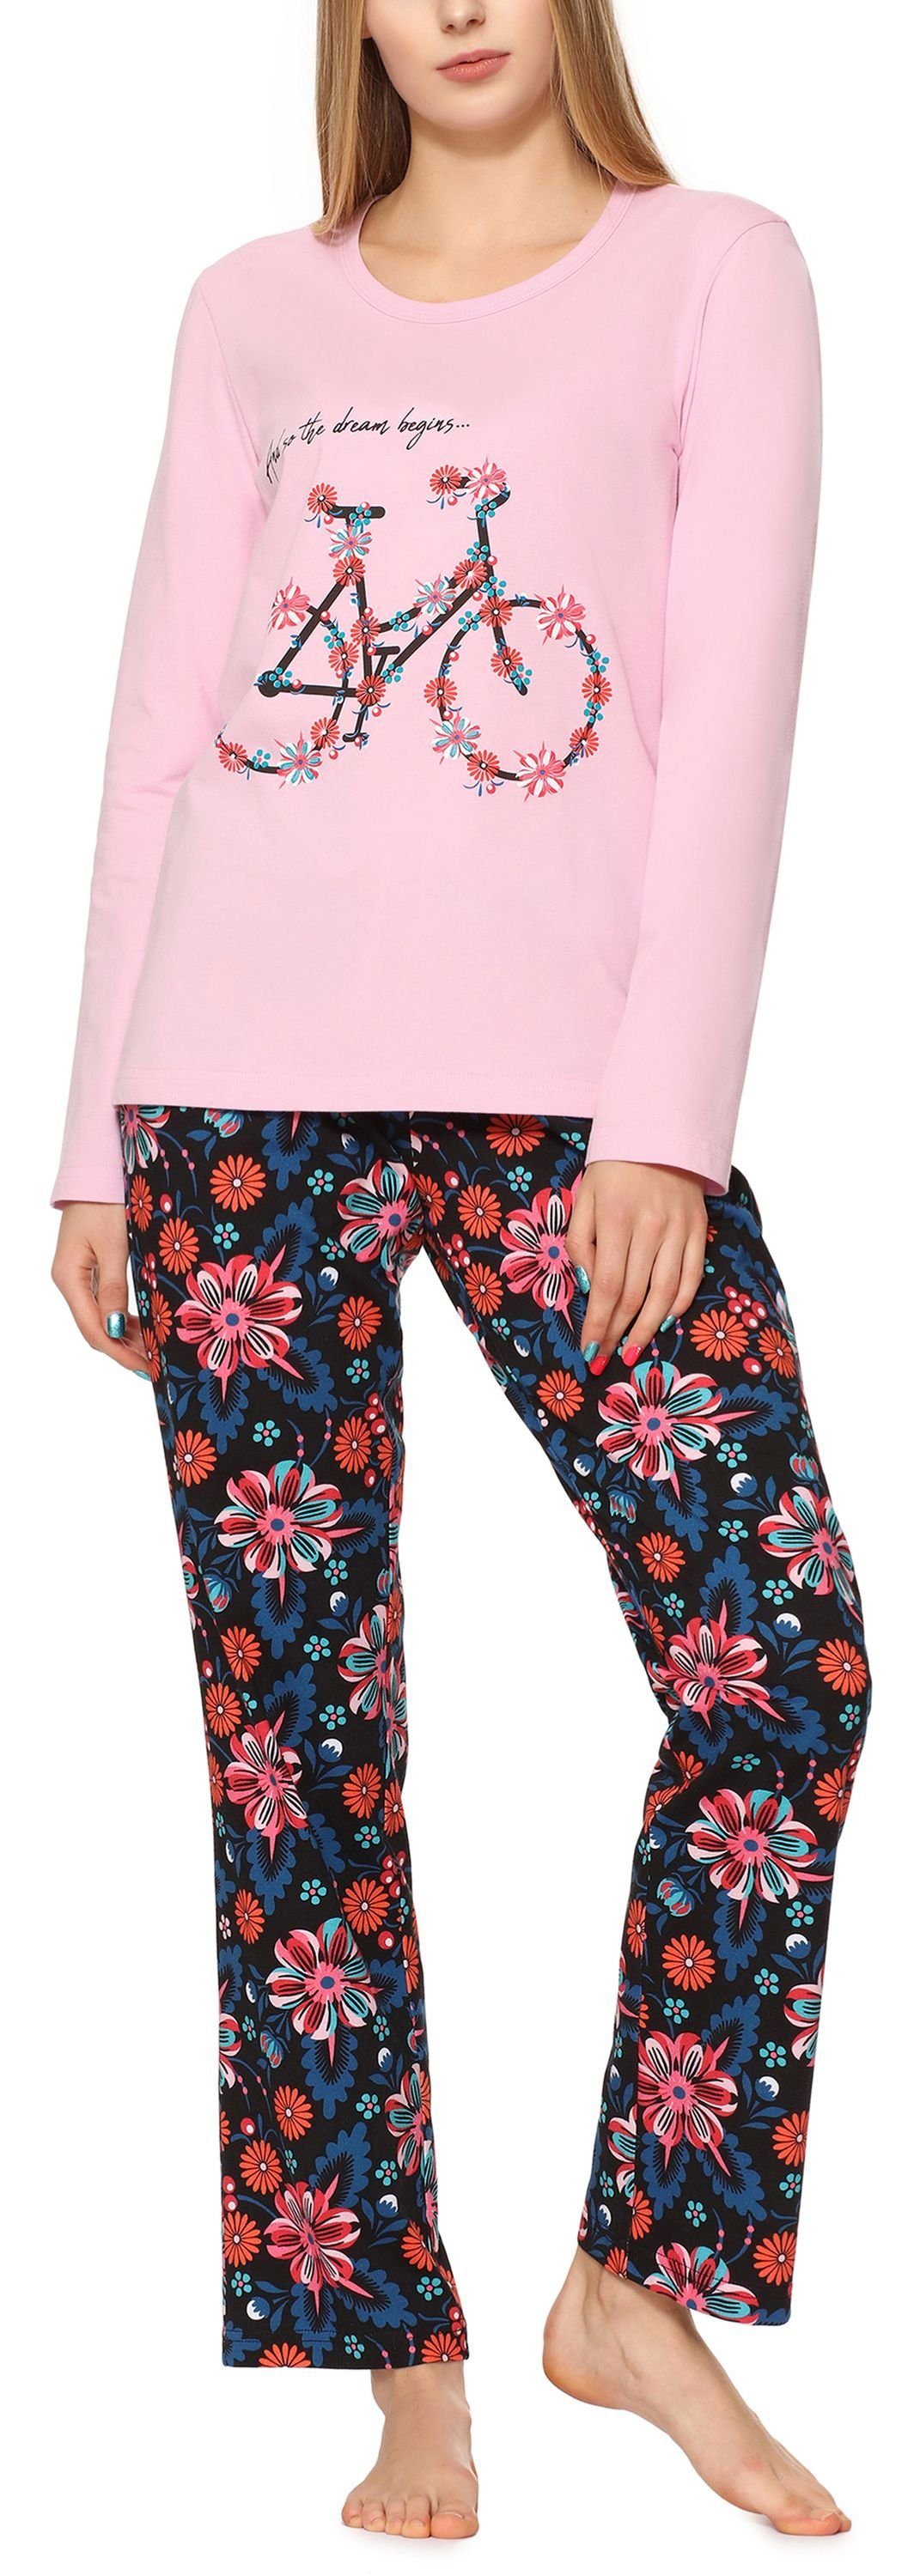 Damen MS10-169 Merry Rosa/Blumen2 Licht Style Schlafanzug Schlafanzug